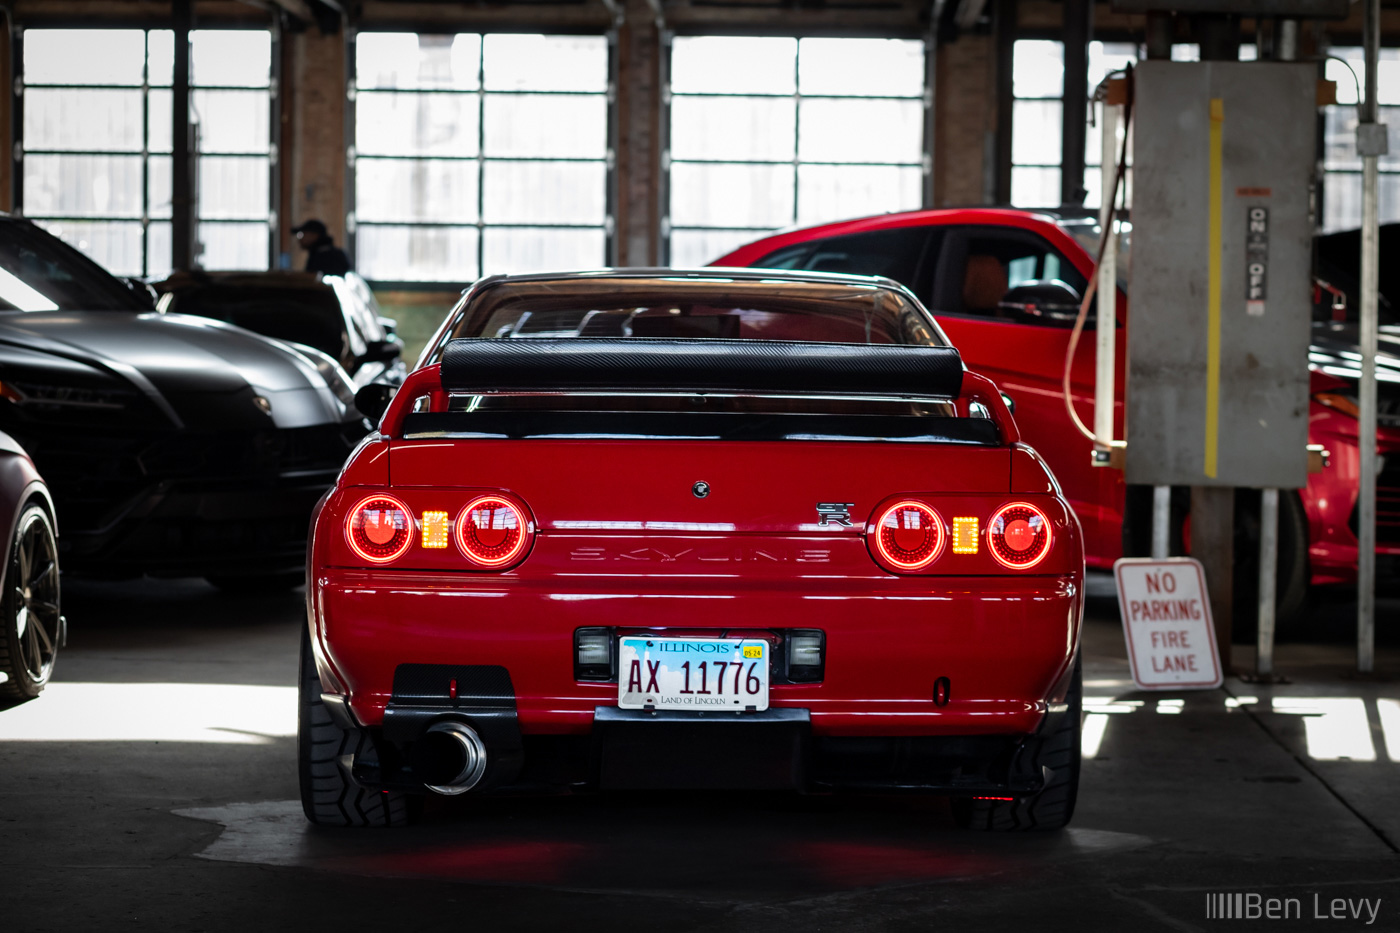 Rear End of Red R32 GT-R at a Cars and Coffee in Chicago